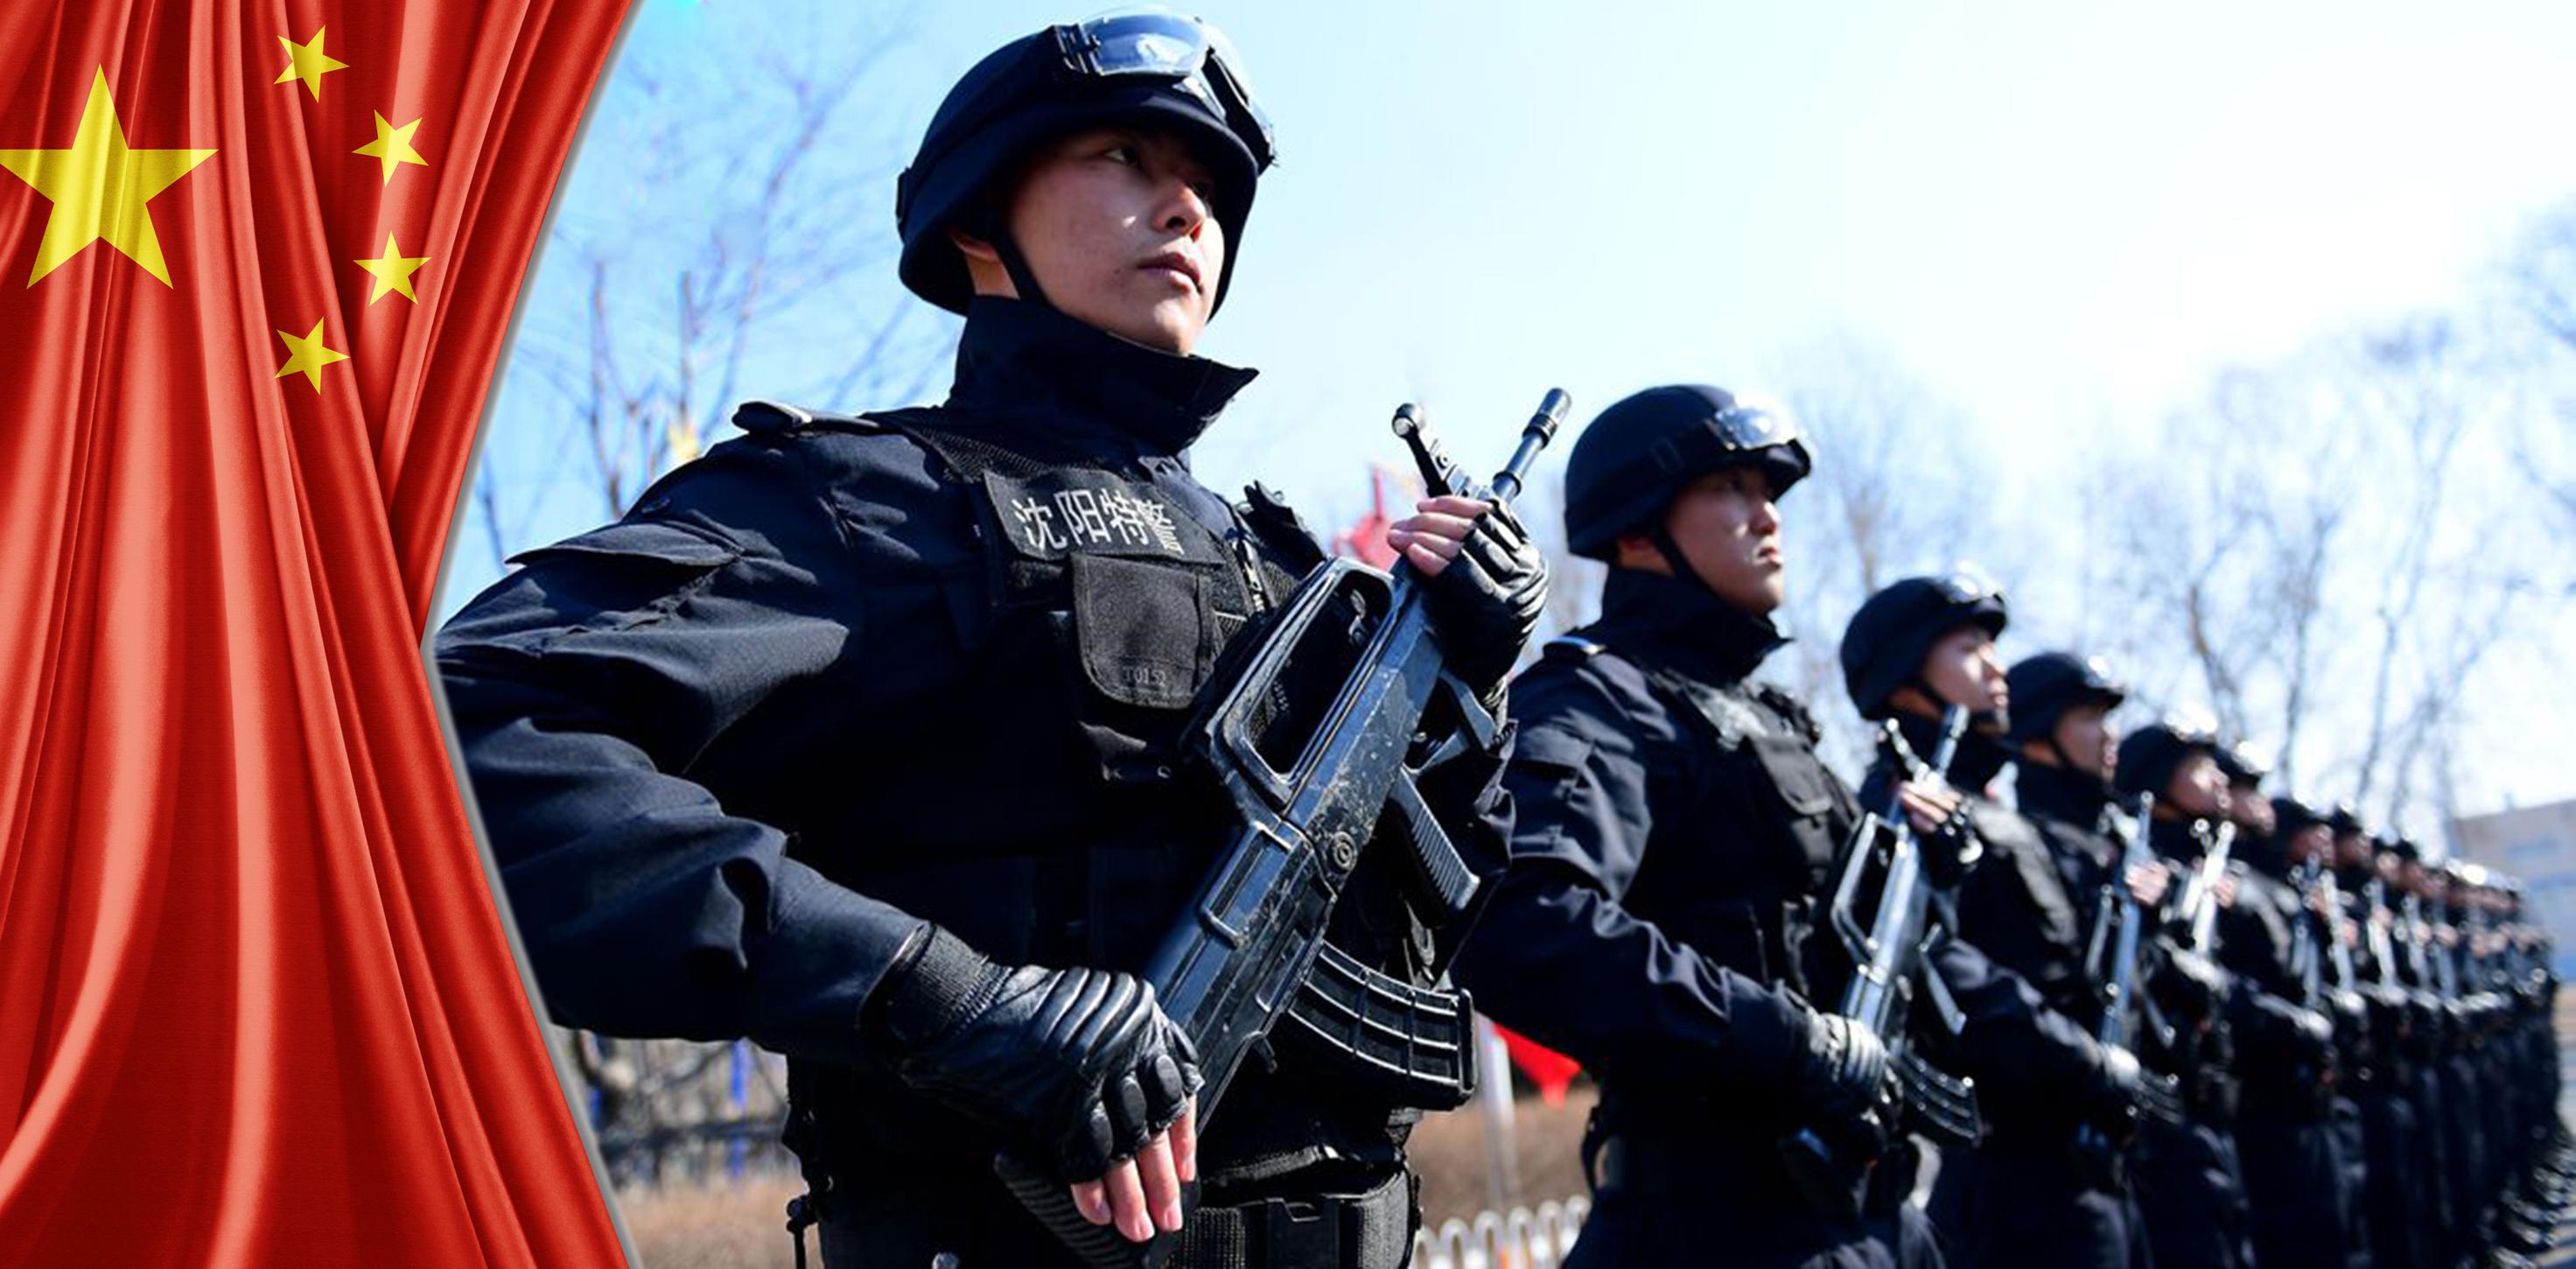 Beijing’s Guards: